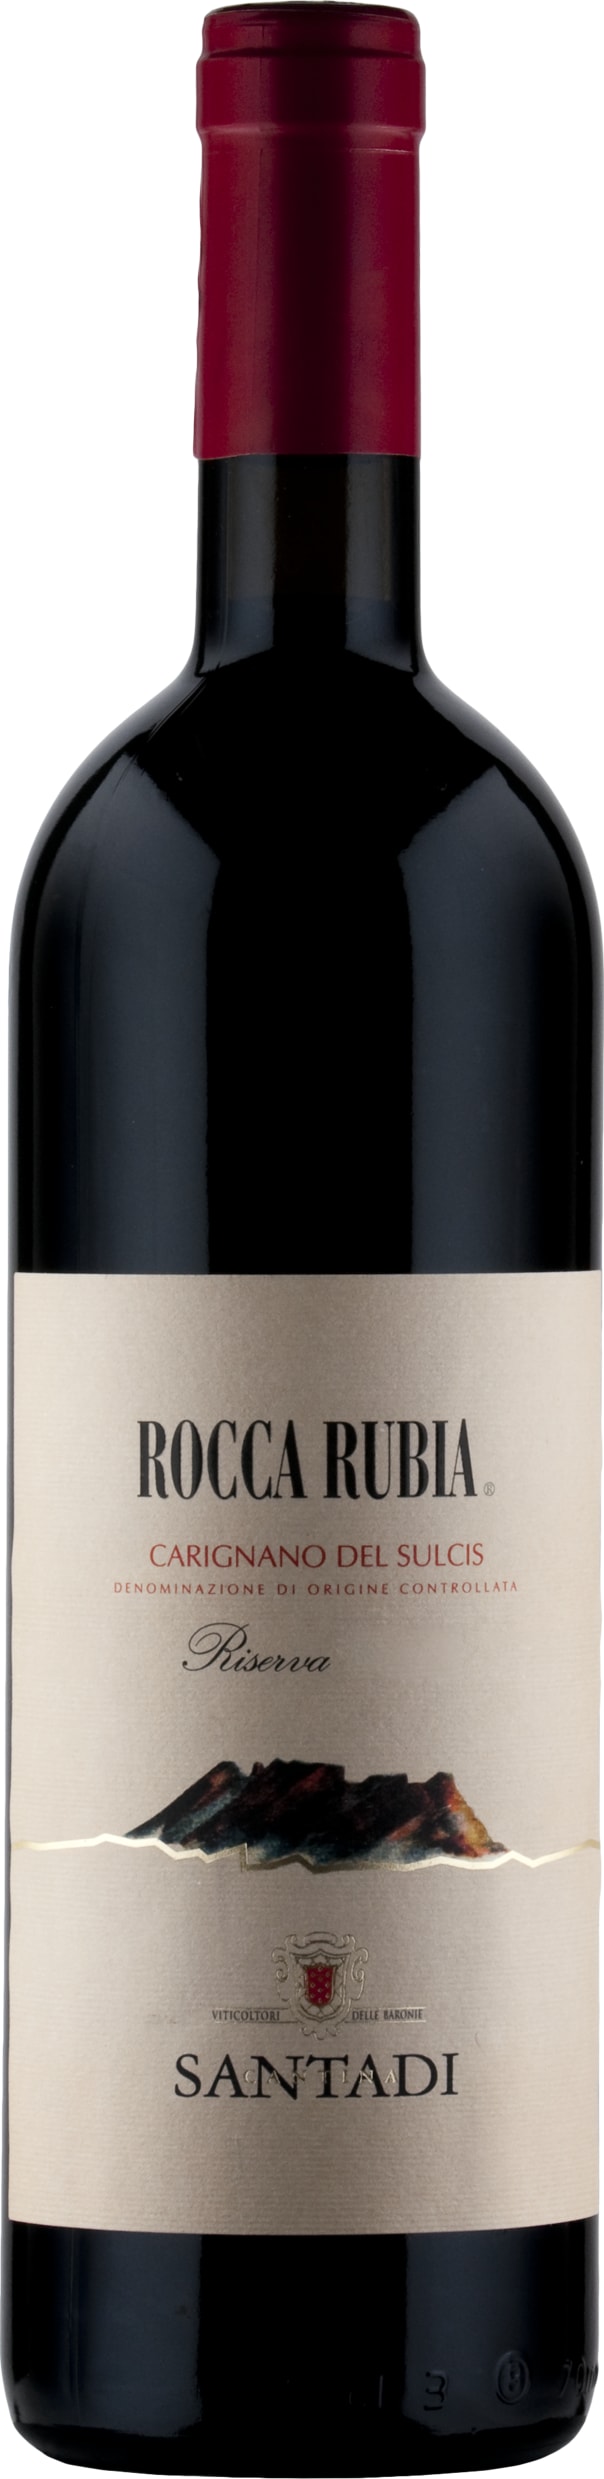 Santadi Carignano del Sulcis Riserva, Rocca Rubia 2020 75cl - Buy Santadi Wines from GREAT WINES DIRECT wine shop